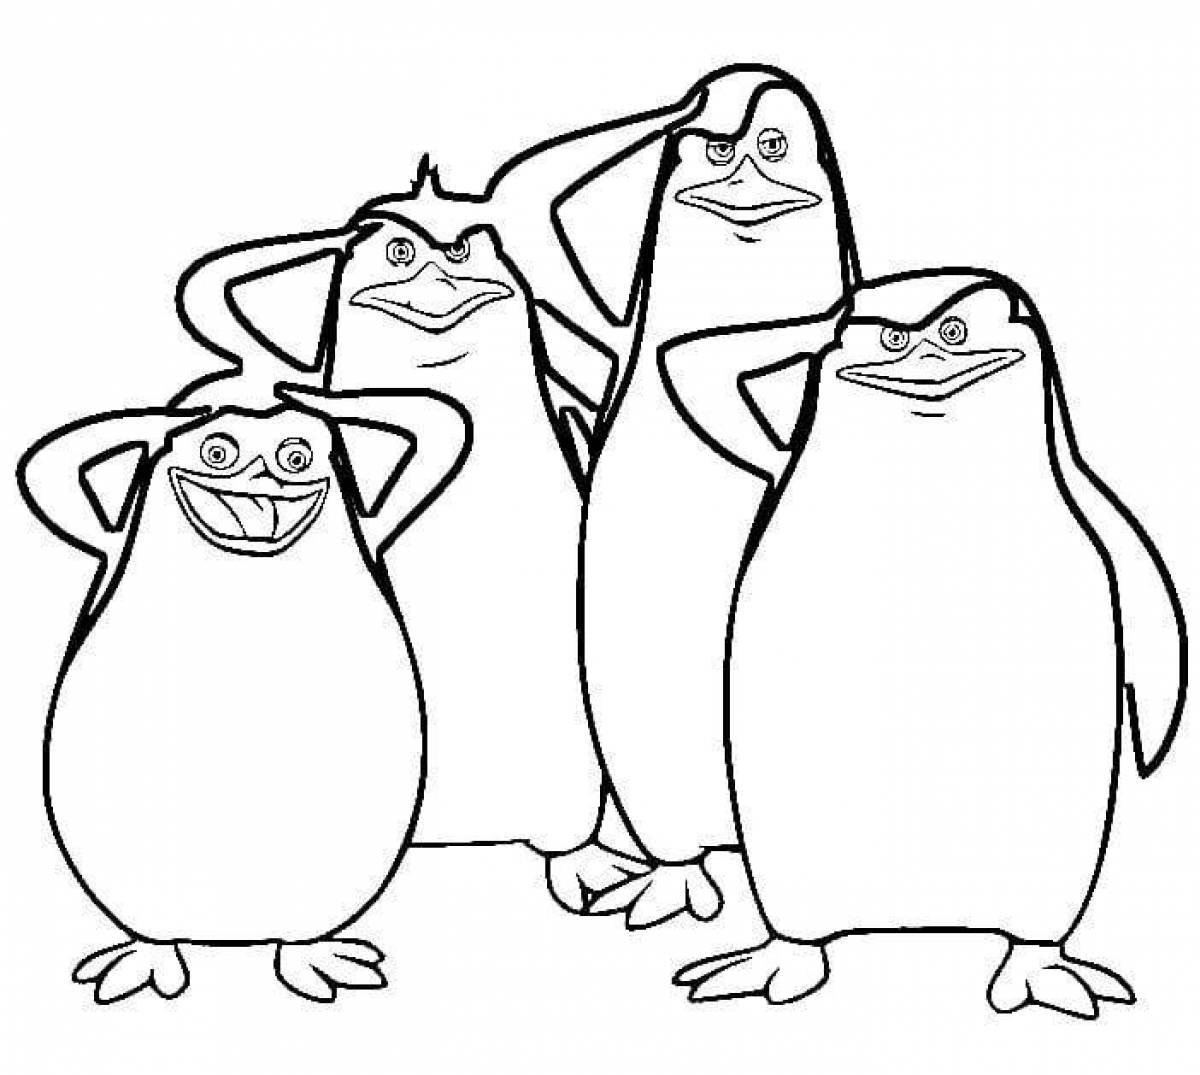 Violent penguins from Madagascar